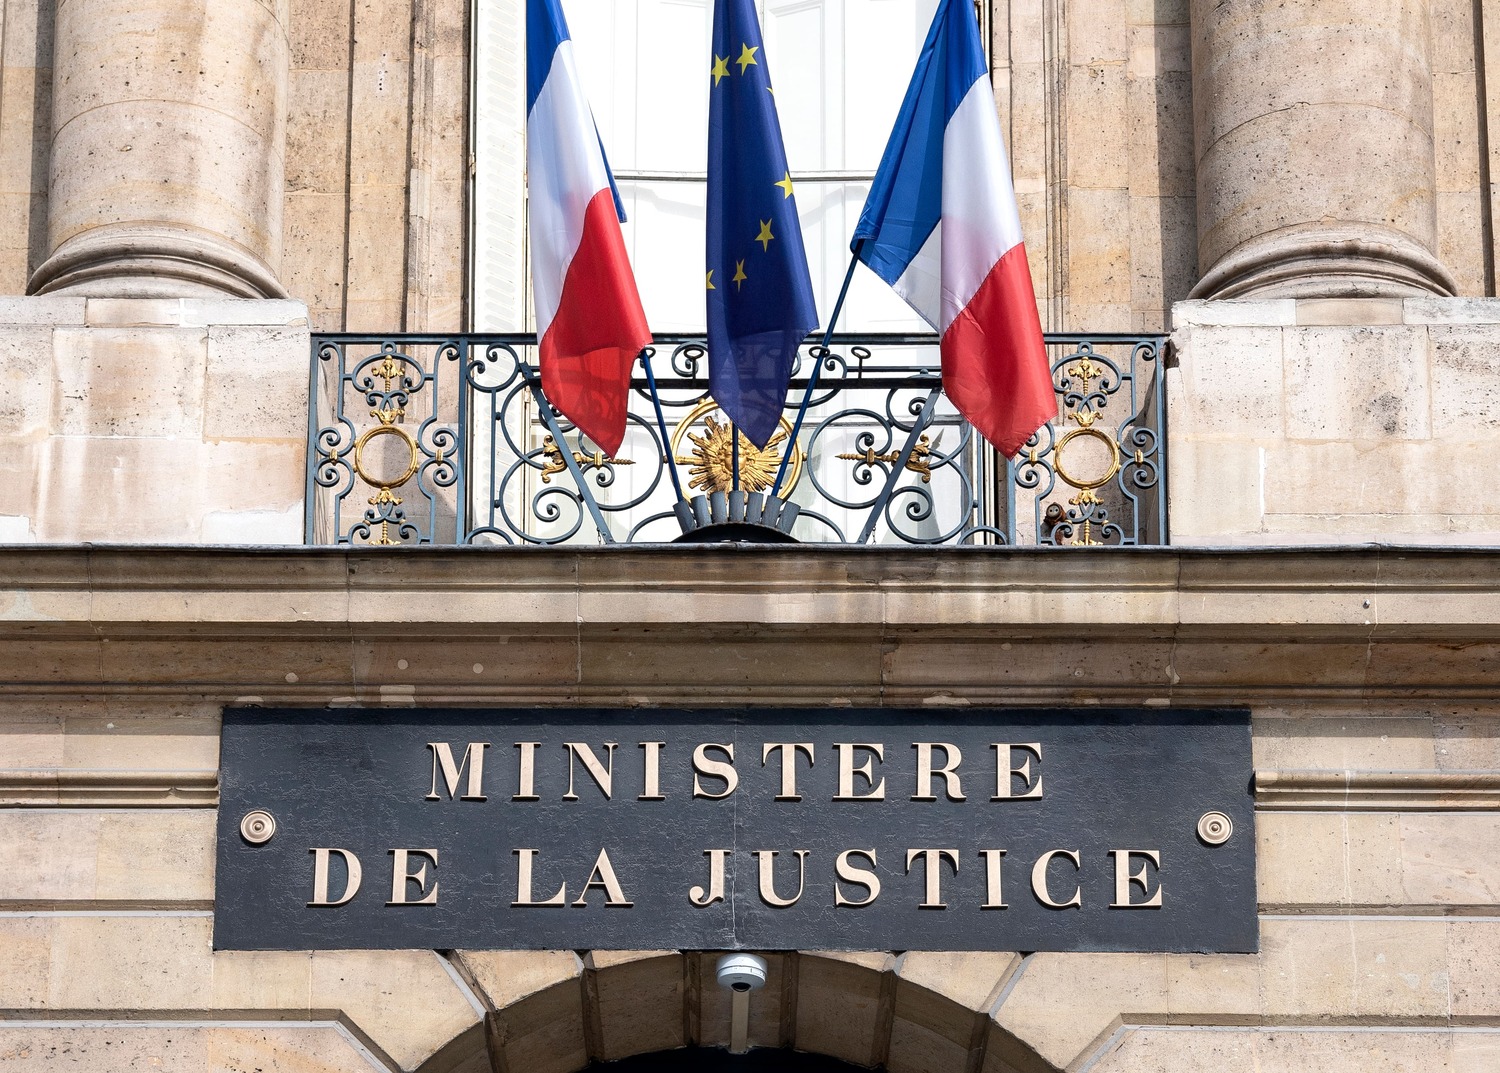 Photo du fronton du Ministère de la Justice, où l'on voit également deux drapeaux français et le drapeau européen